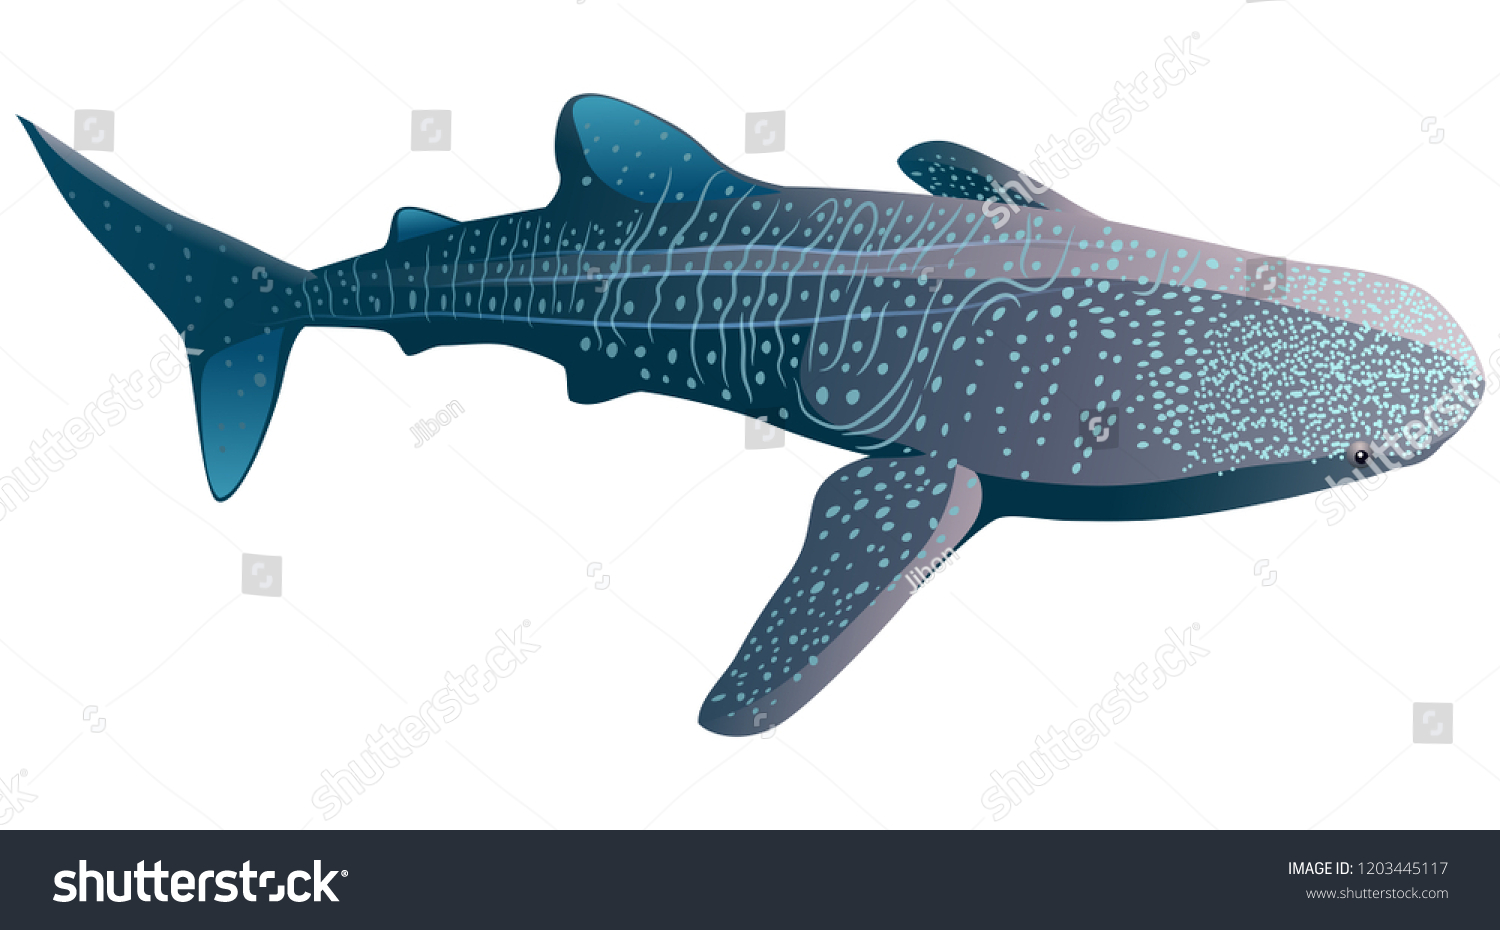 Китовая акула из пластилина